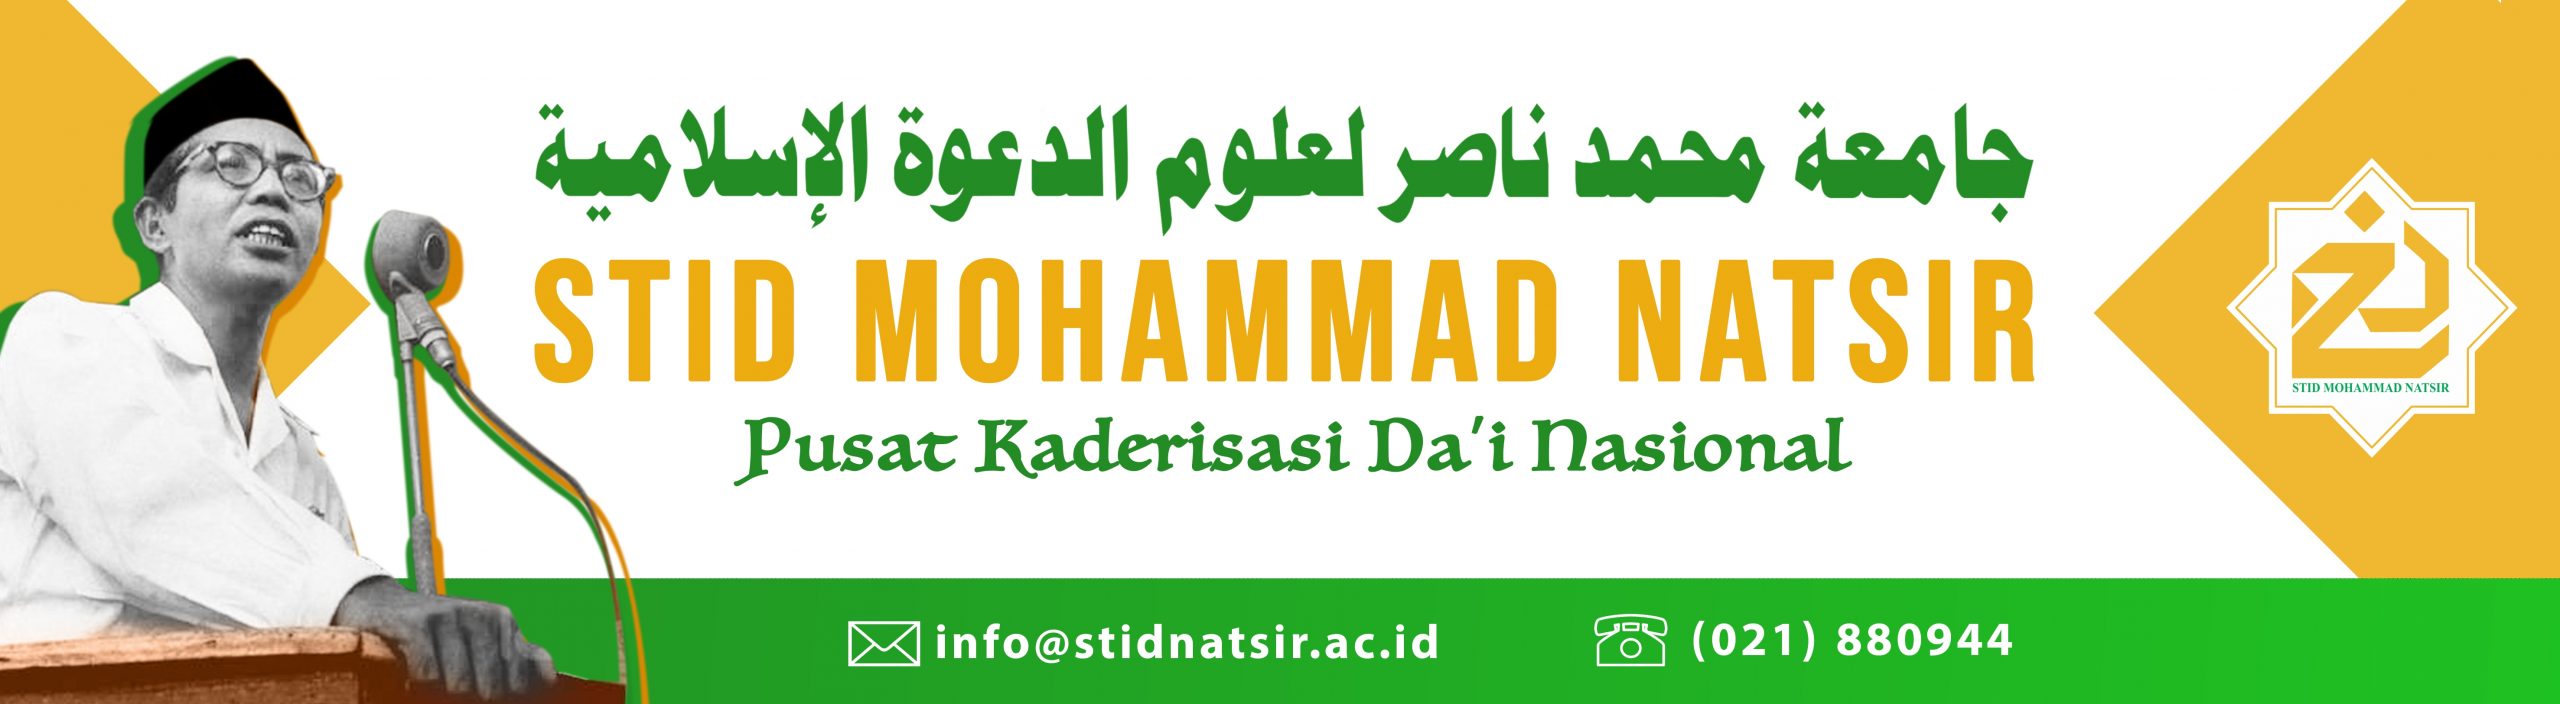 STID Mohammad Natsir